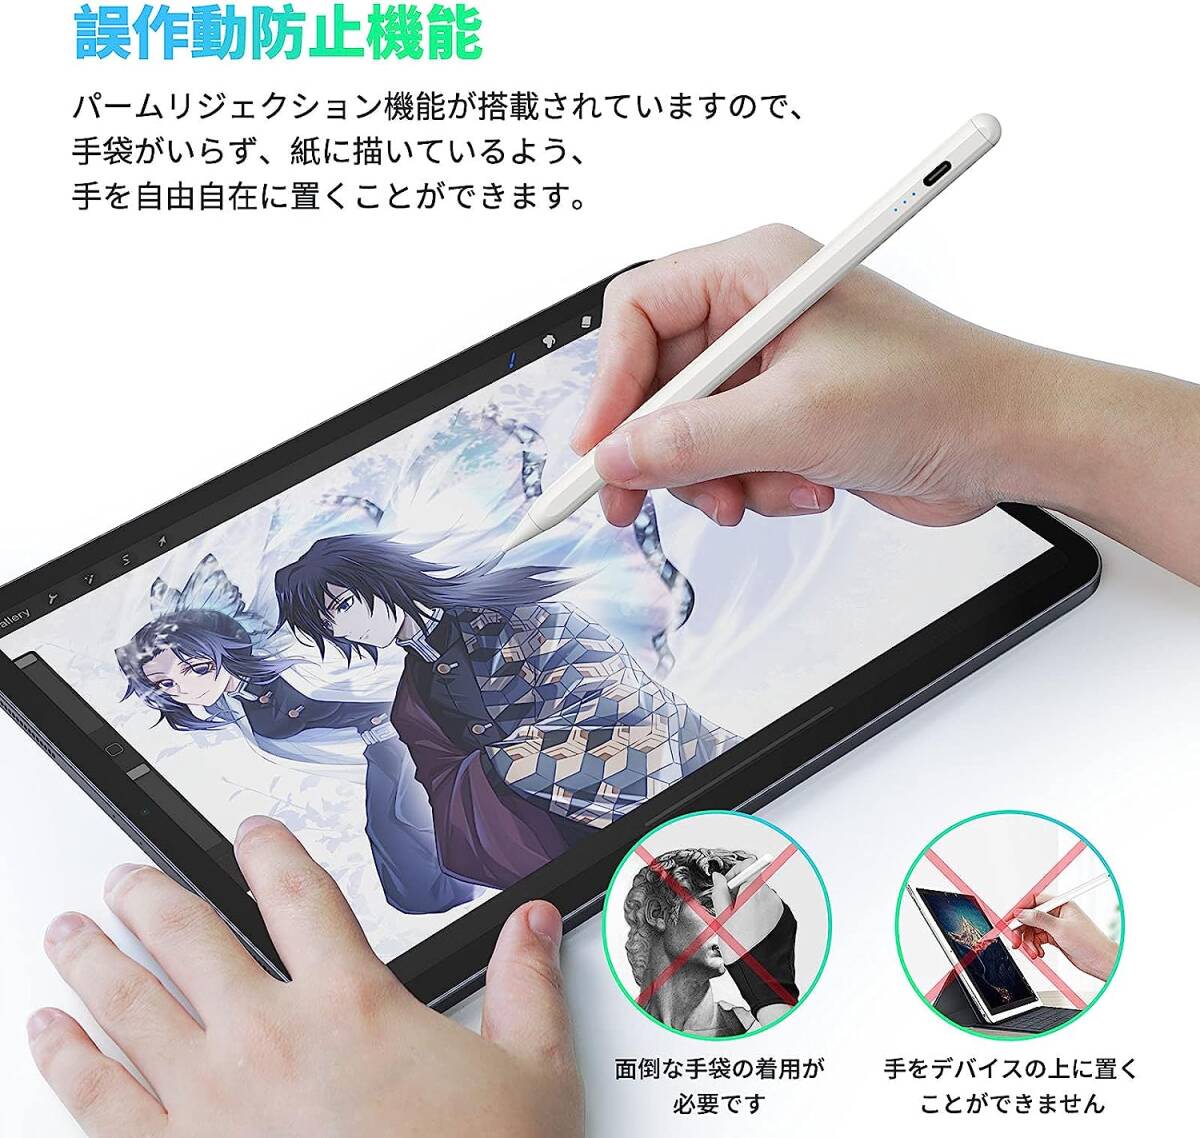 スタイラスペン iPad専用ペン 超高感度 極細 タッチペンiPad専用 傾き感知/誤作動防止/磁気吸着機能対応 _画像5